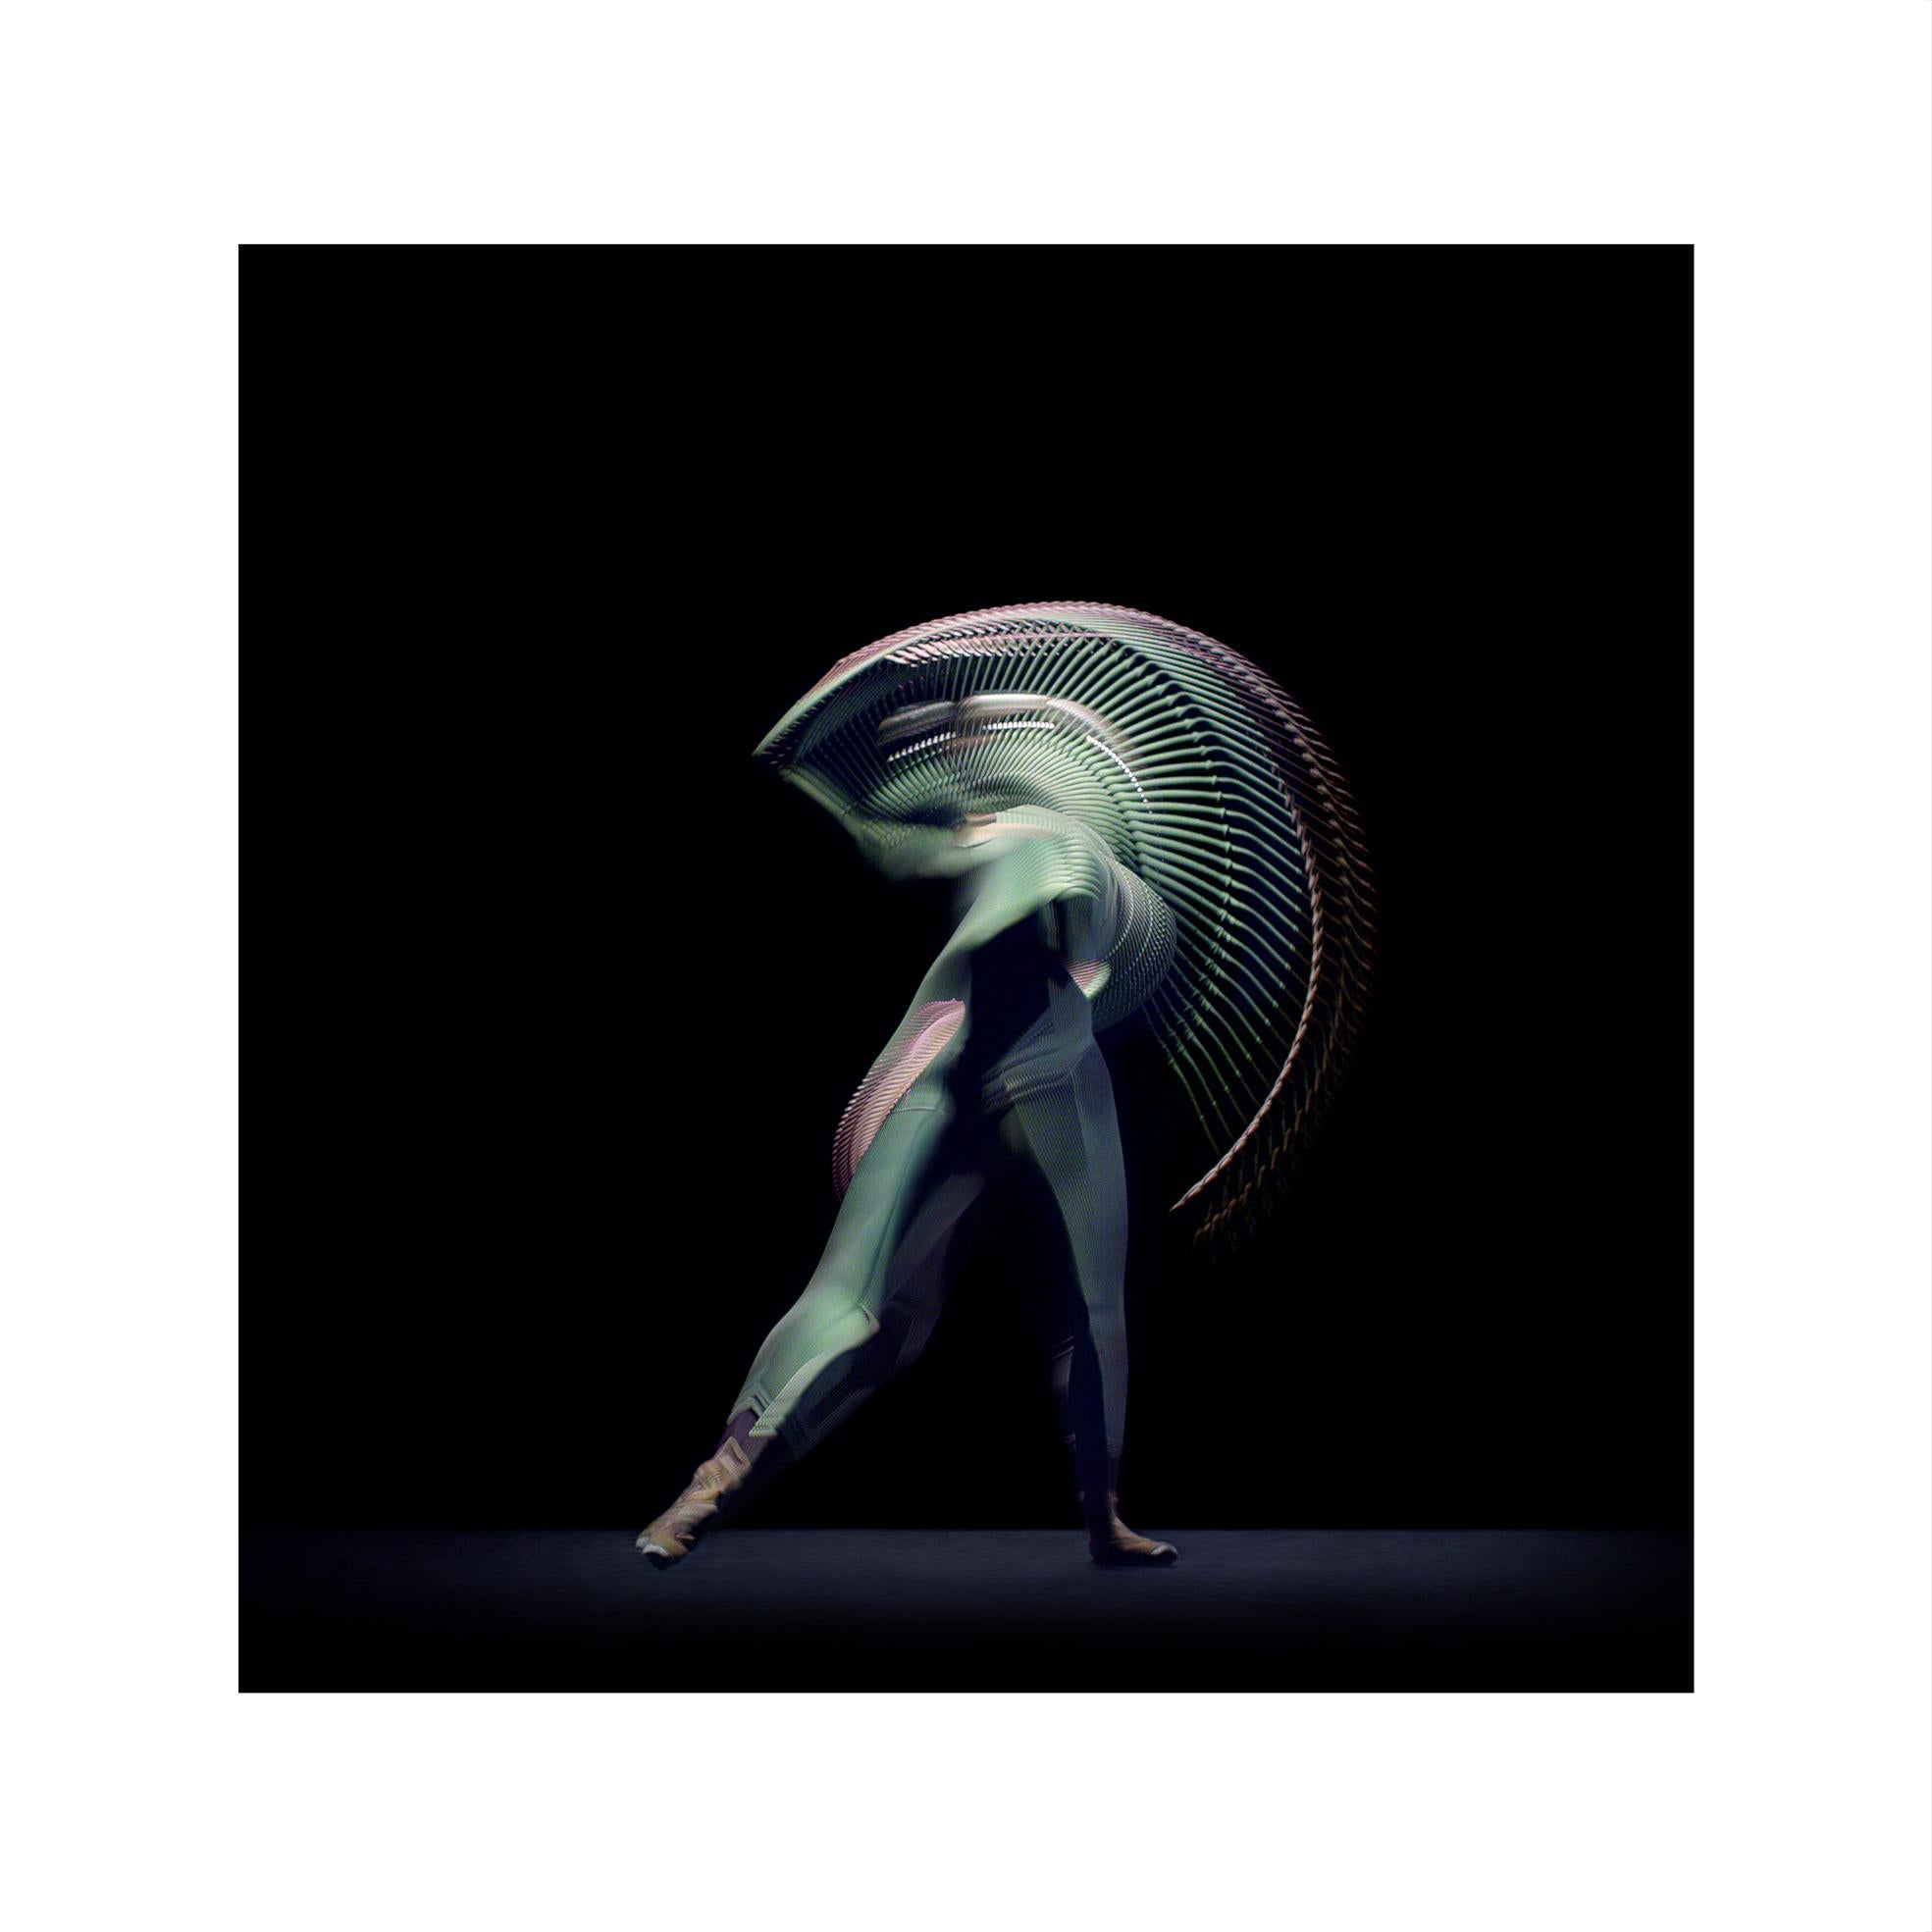 Abstrakte Tänzer, Grün, 5, 2019 von Giles Revell – Fotografie, Druck, Ballett